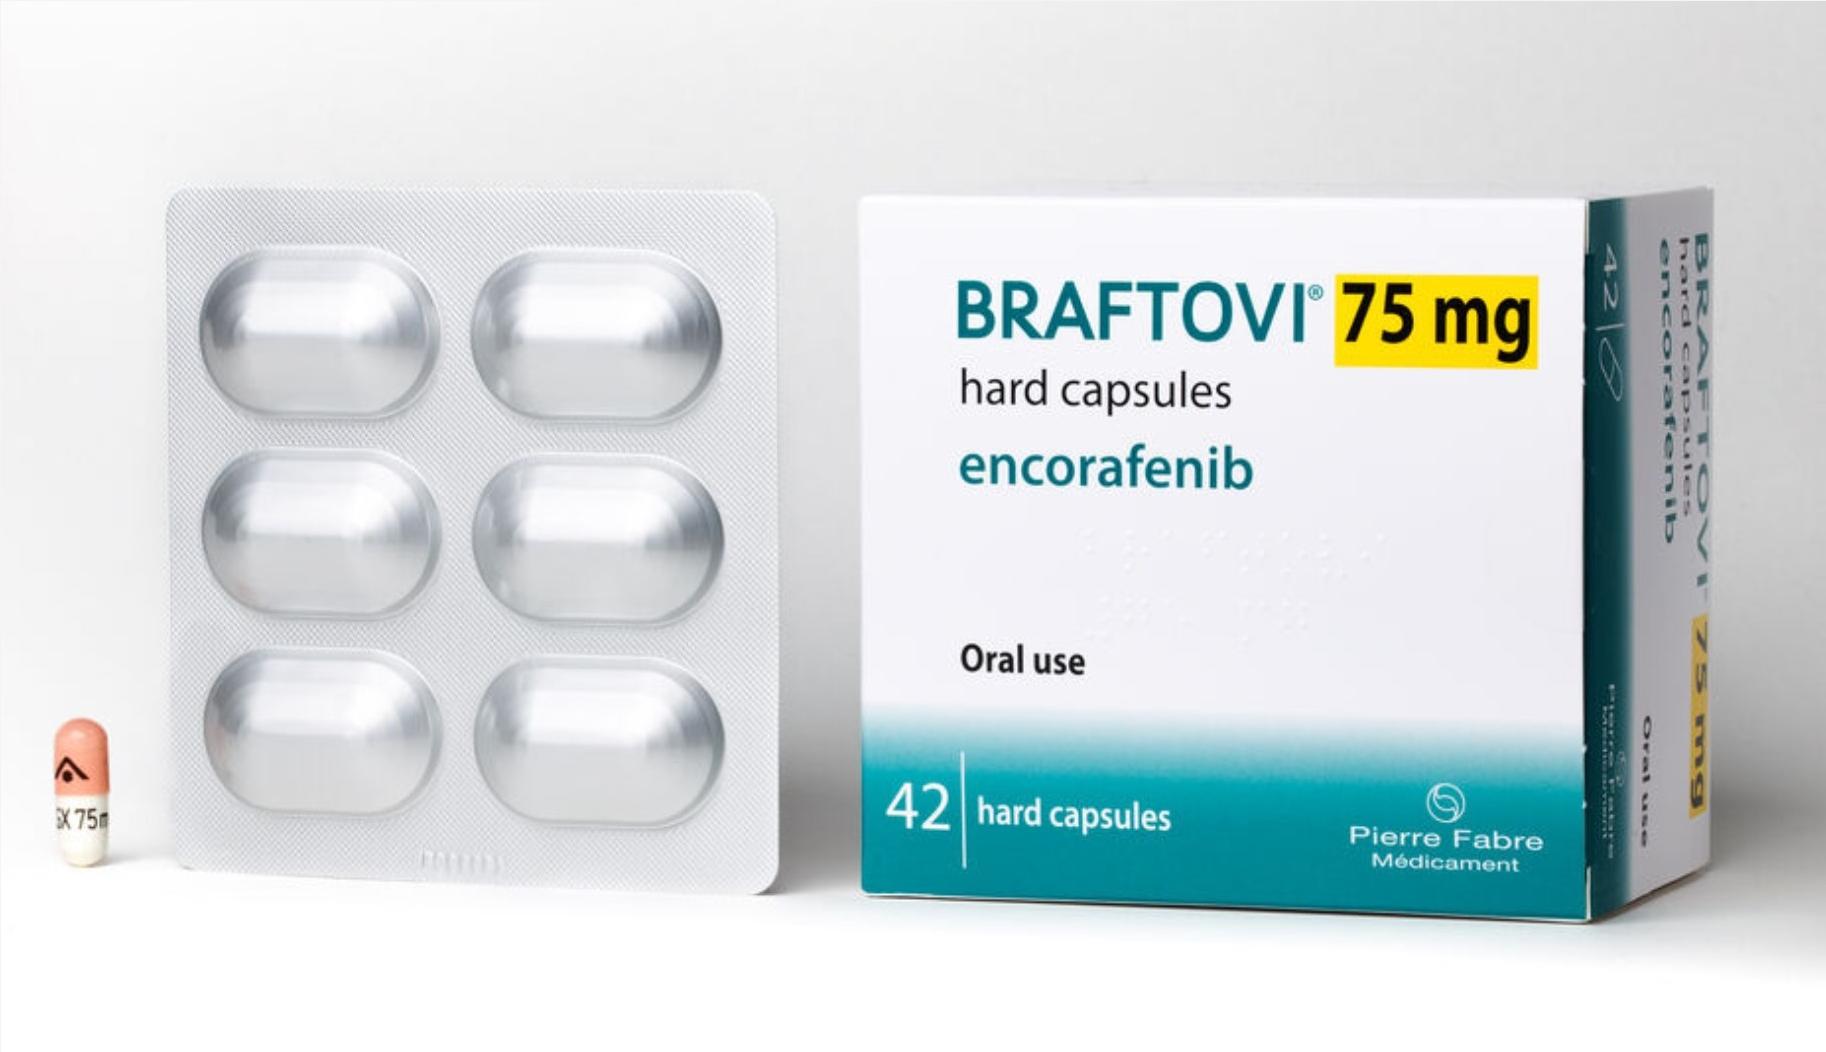 Thuốc Braftovi Encorafenib 75mg giá bao nhiêu mua ở đâu?